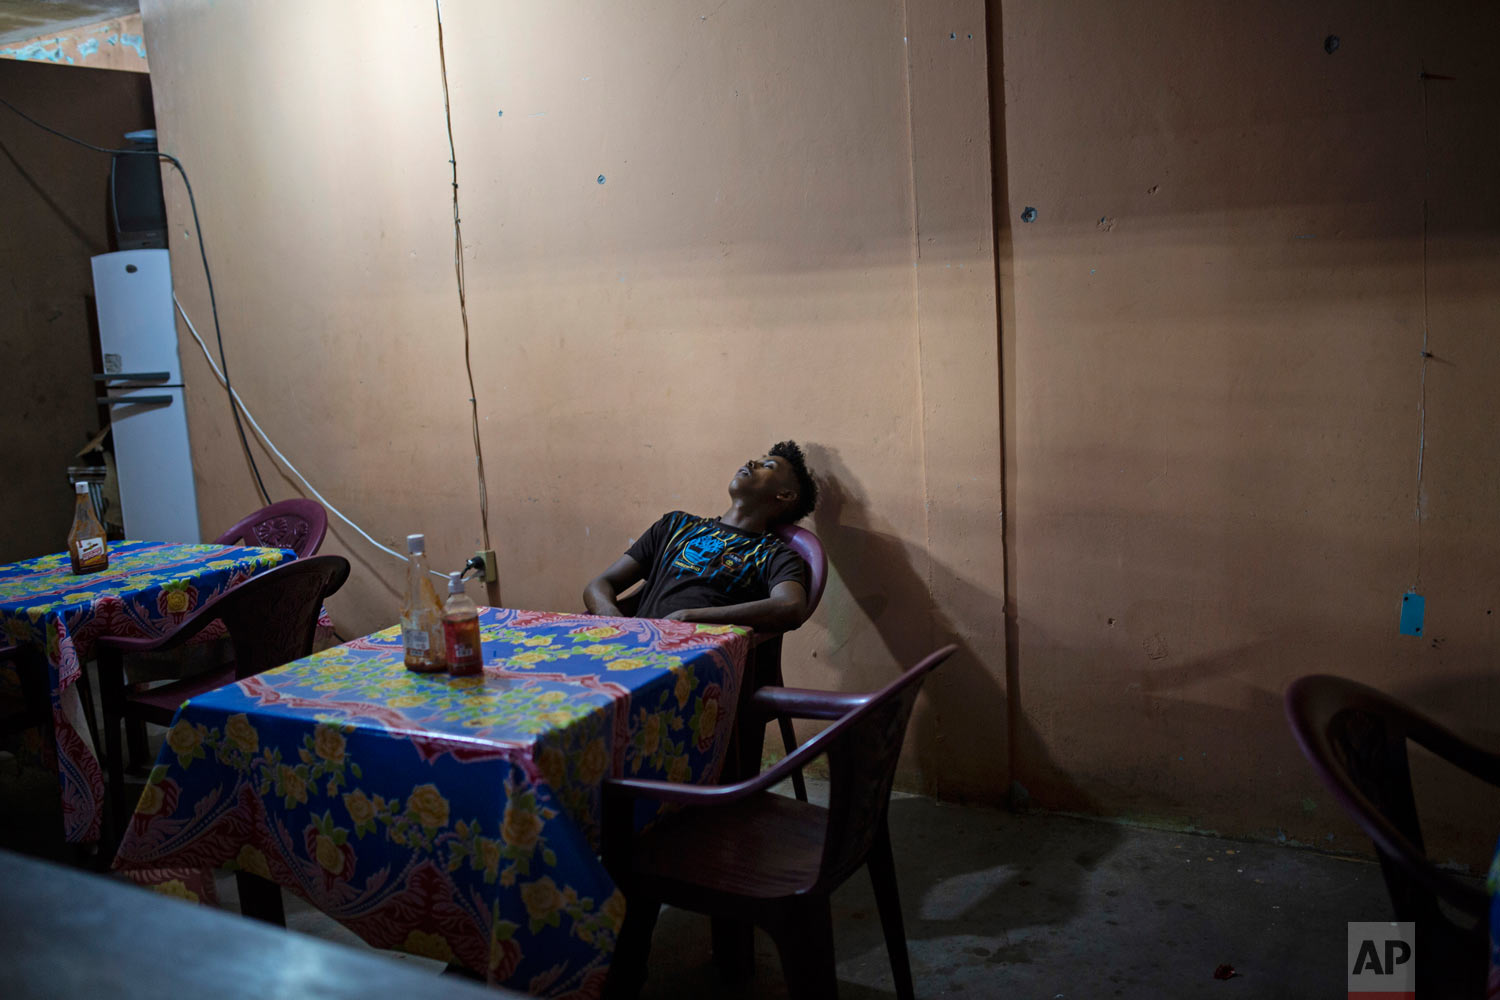  In this Feb. 9, 2018 photo, a man takes a nap inside a makeshift restaurant in Puerto Lempira, Honduras. (AP Photo/Rodrigo Abd) 